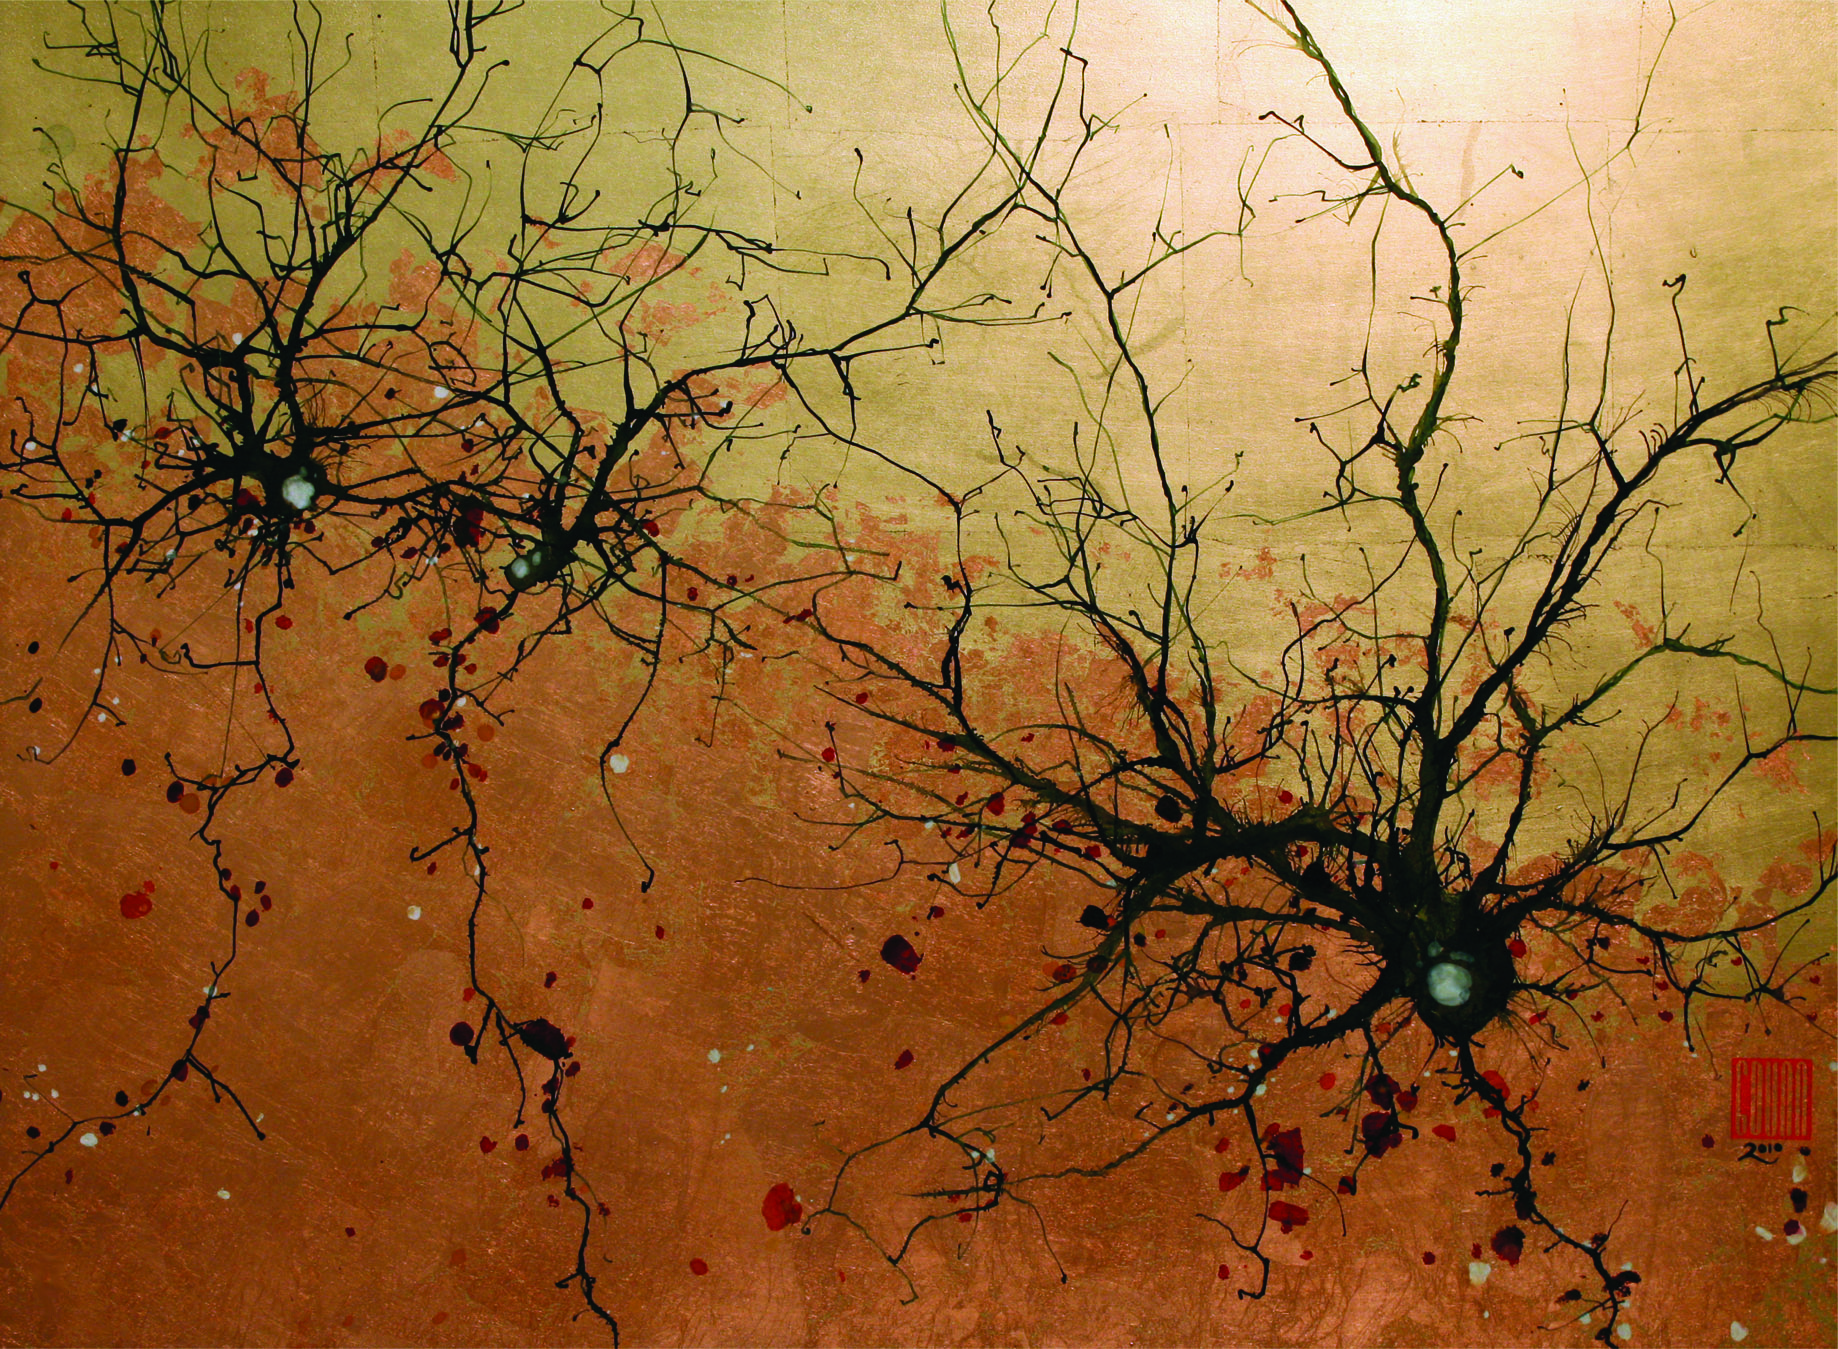 Purkinje Neurons